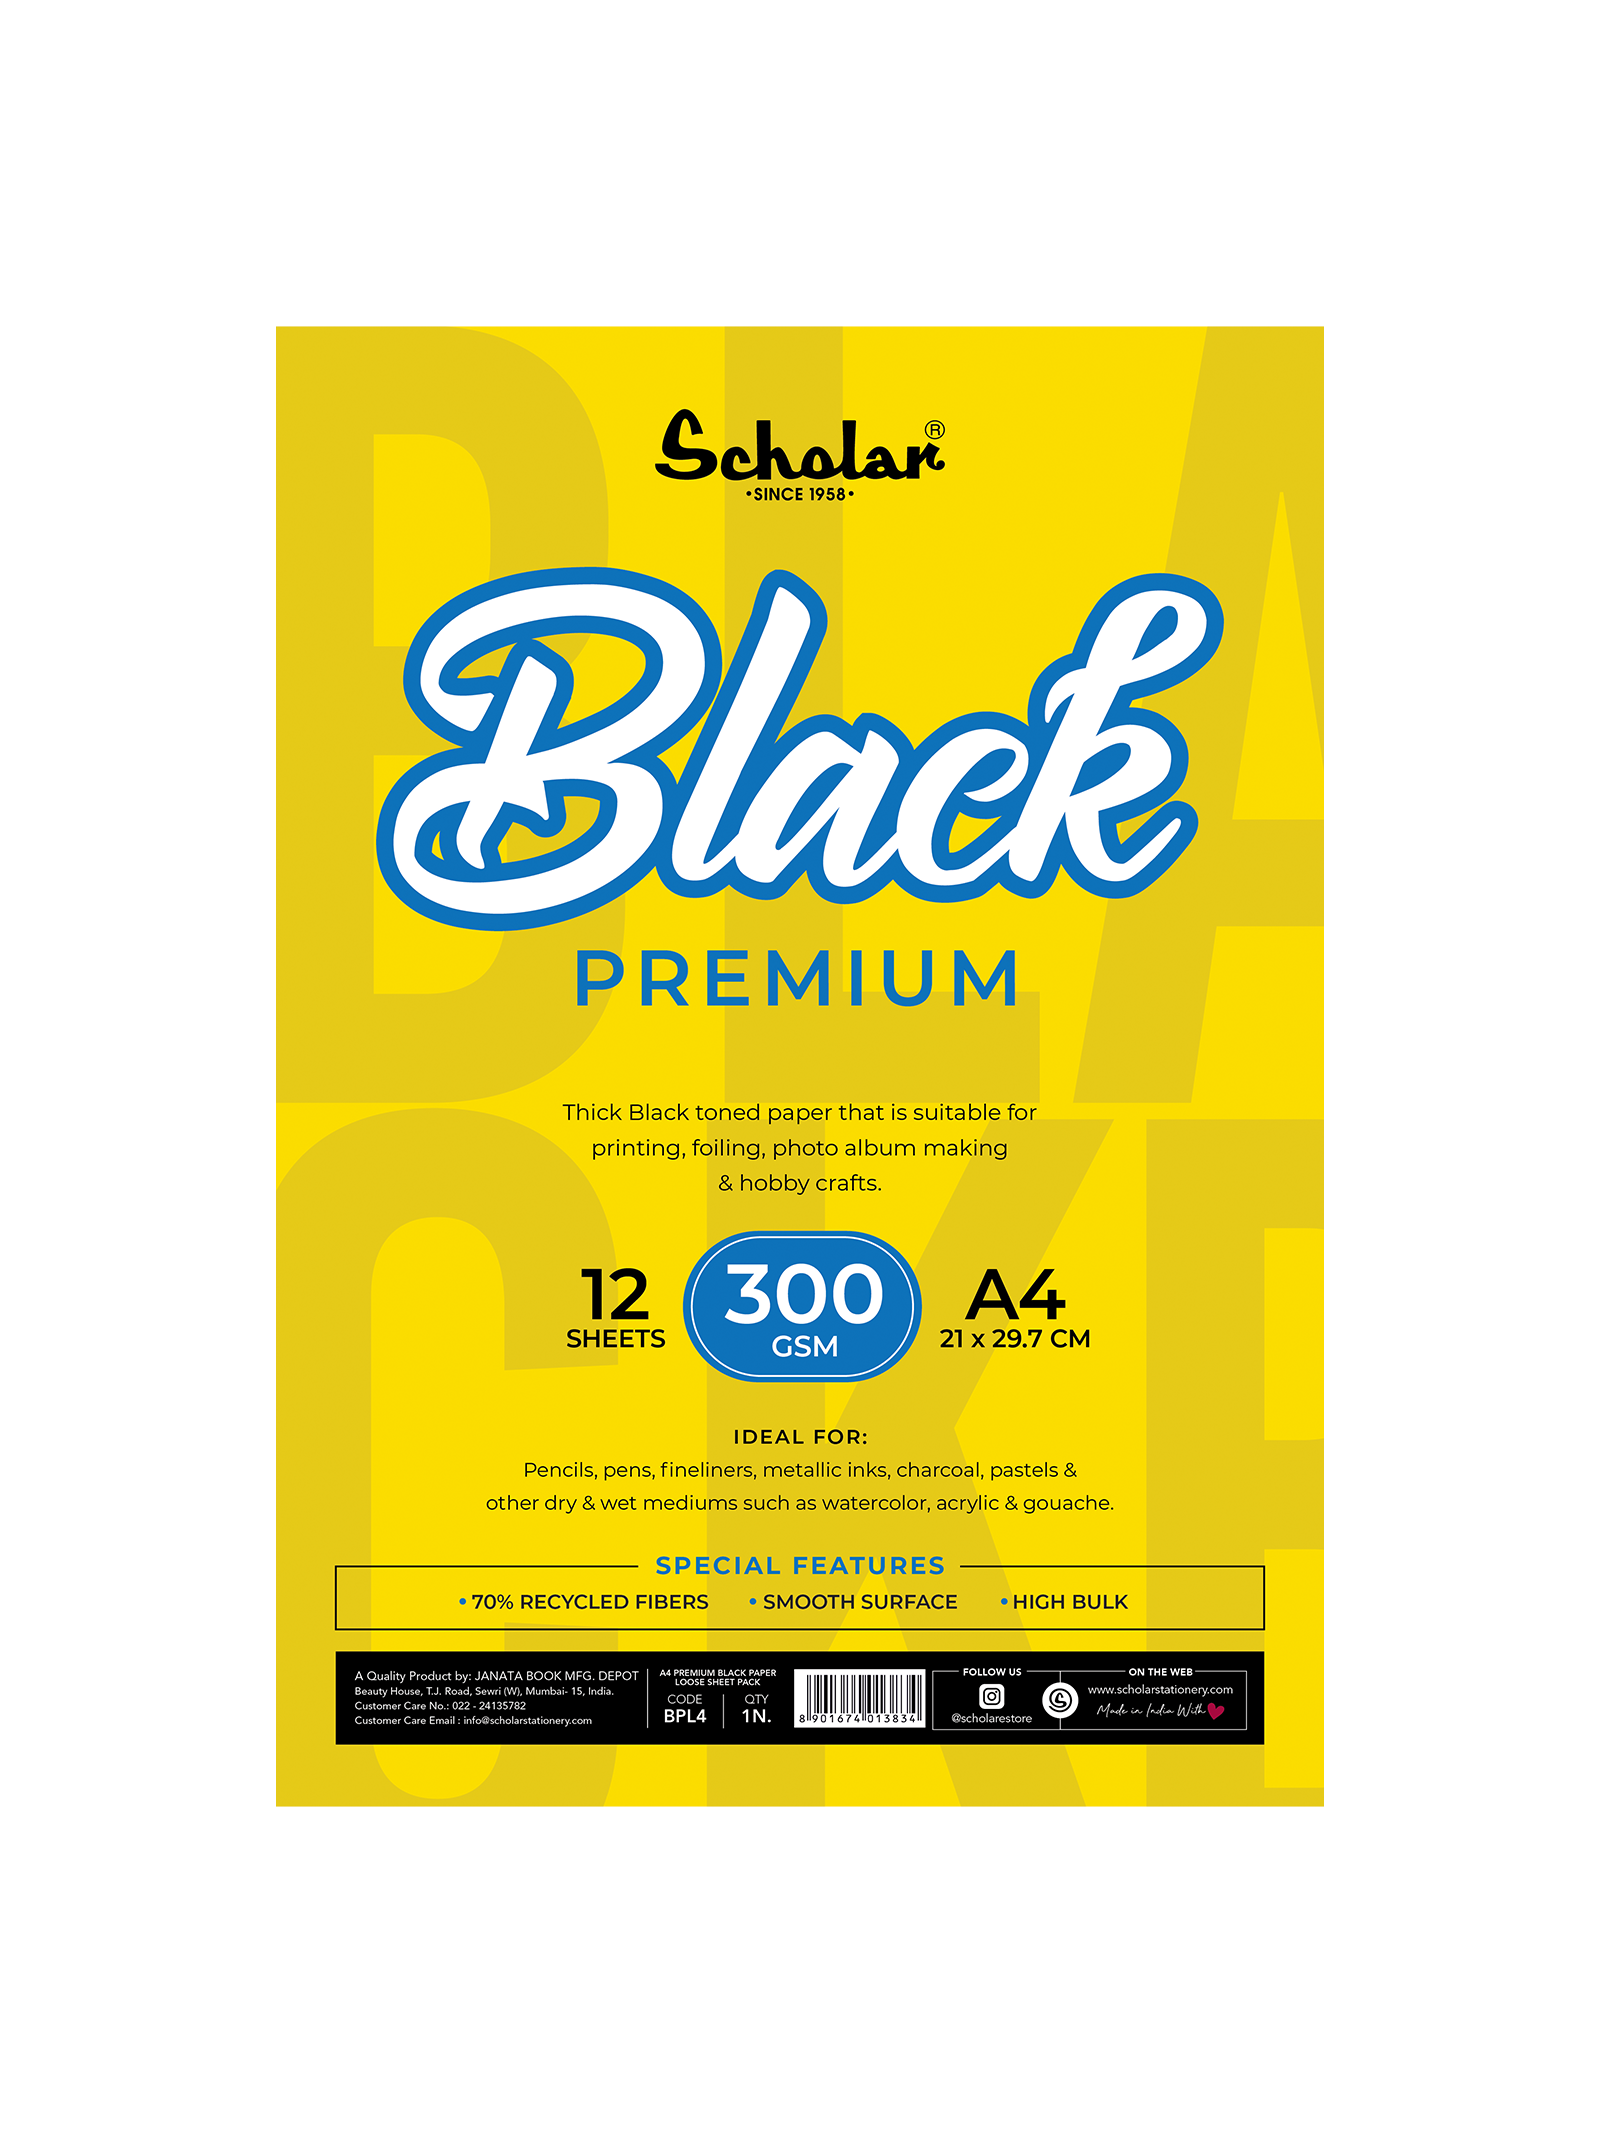 Scholar Premium Black Paper Loose Sheet 300gsm BPL A3, A4